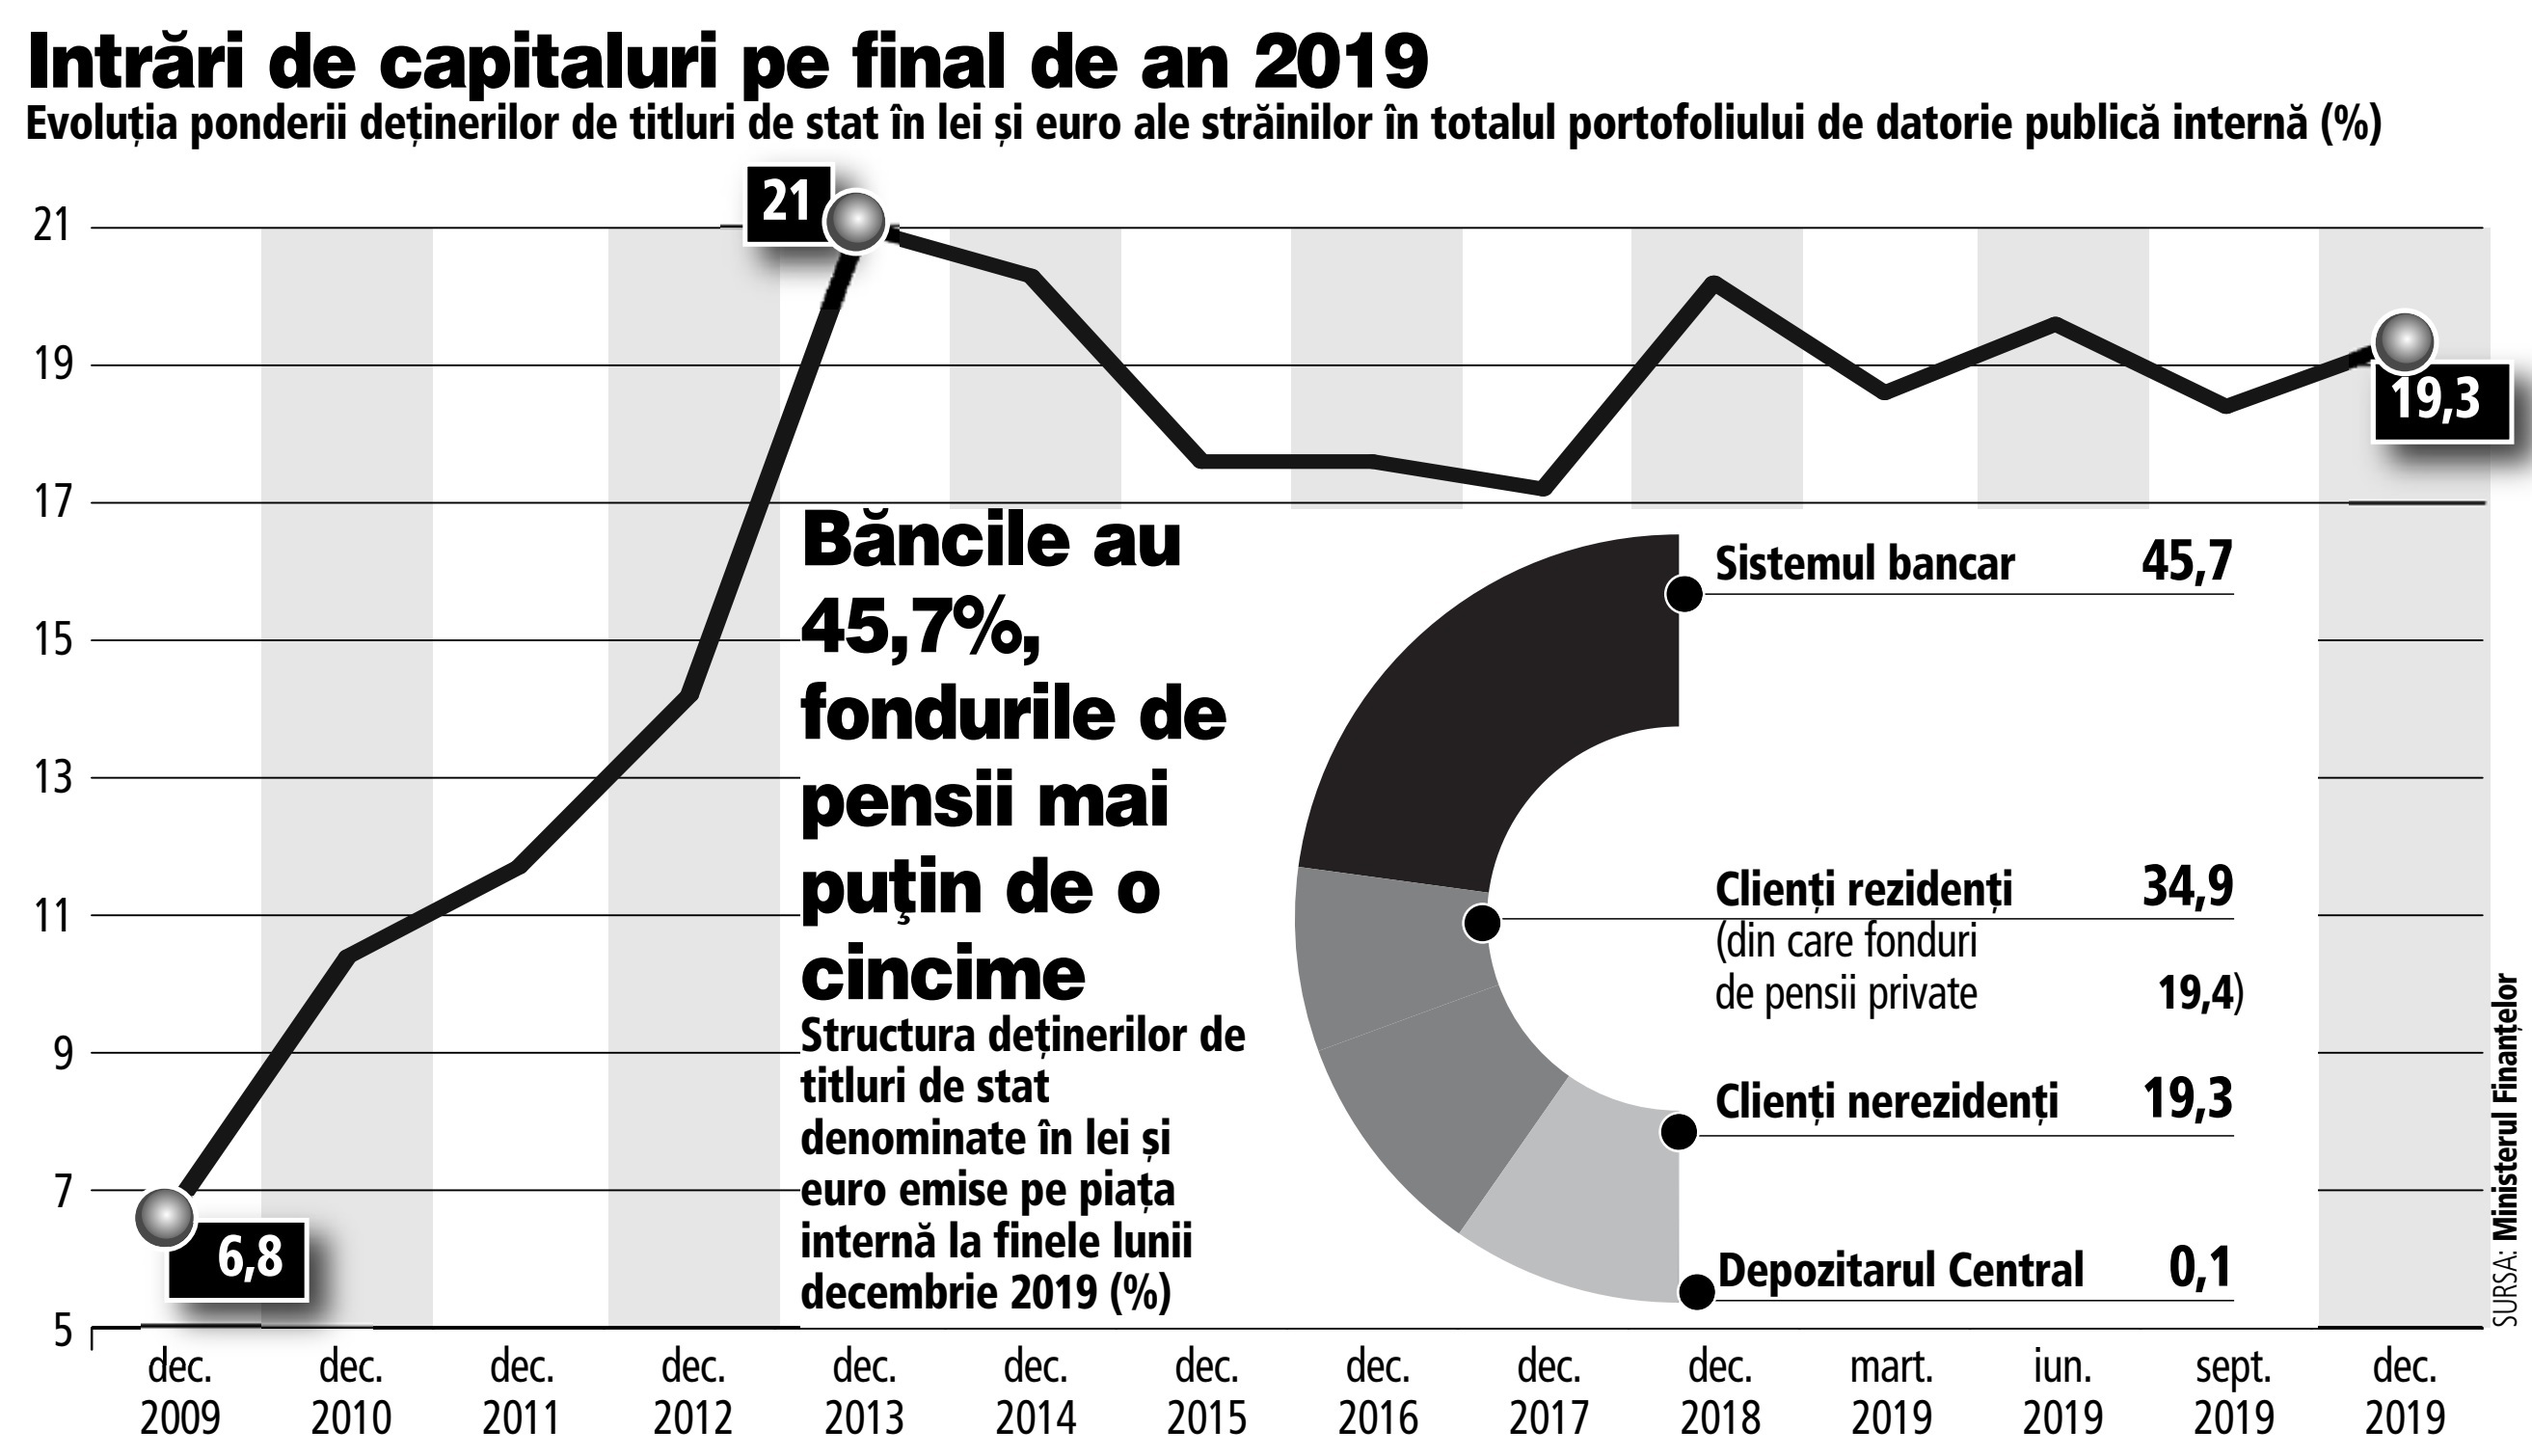 Plasamentele străinilor în titluri de stat româneşti s-au apropiat la sfârşitul anului 2019 de participaţiile fondurilor de pensii private în titluri, care au scăzut la 19,4%